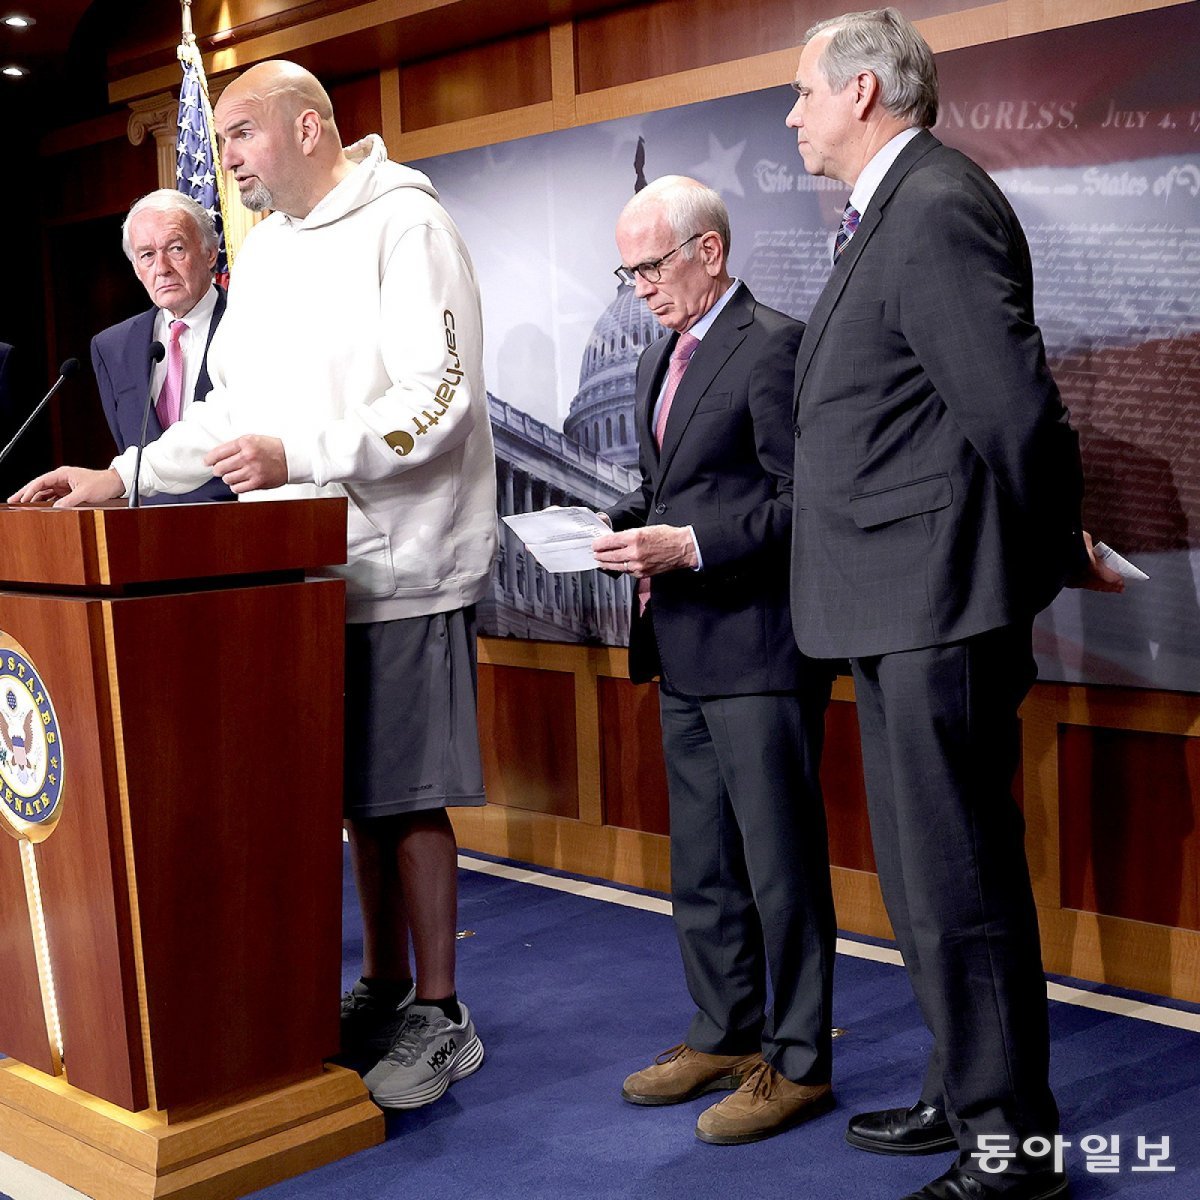 존 페터만 상원의원이 후드티에 반바지를 입고 기자회견을 하는 모습. 미 상원 홈페이지